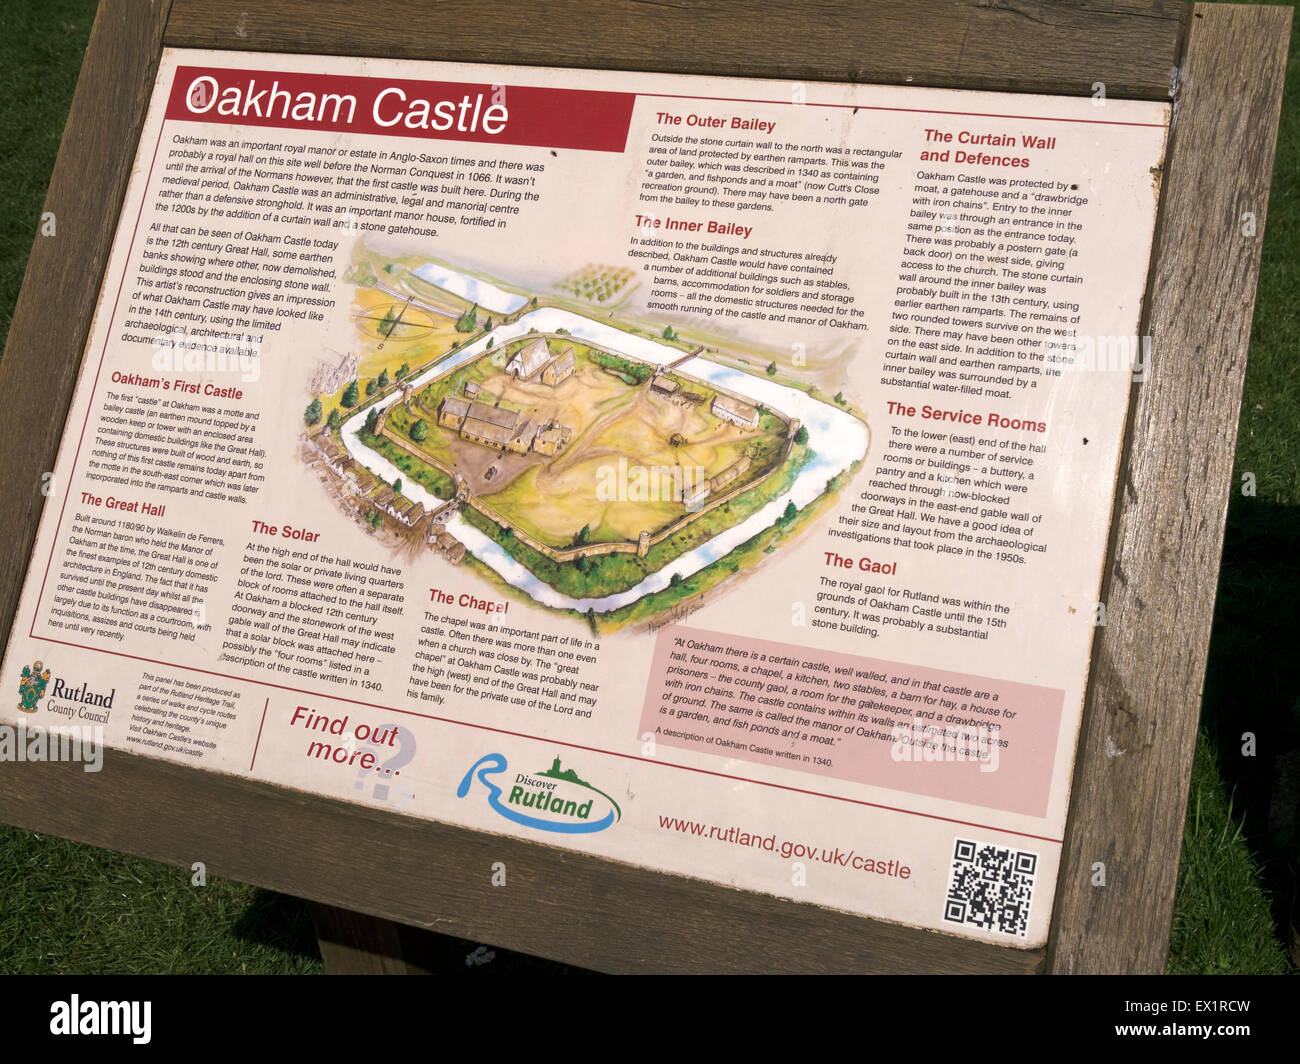 Oakham Castle información turística cartelera, Rutland, Inglaterra, Reino Unido. Foto de stock